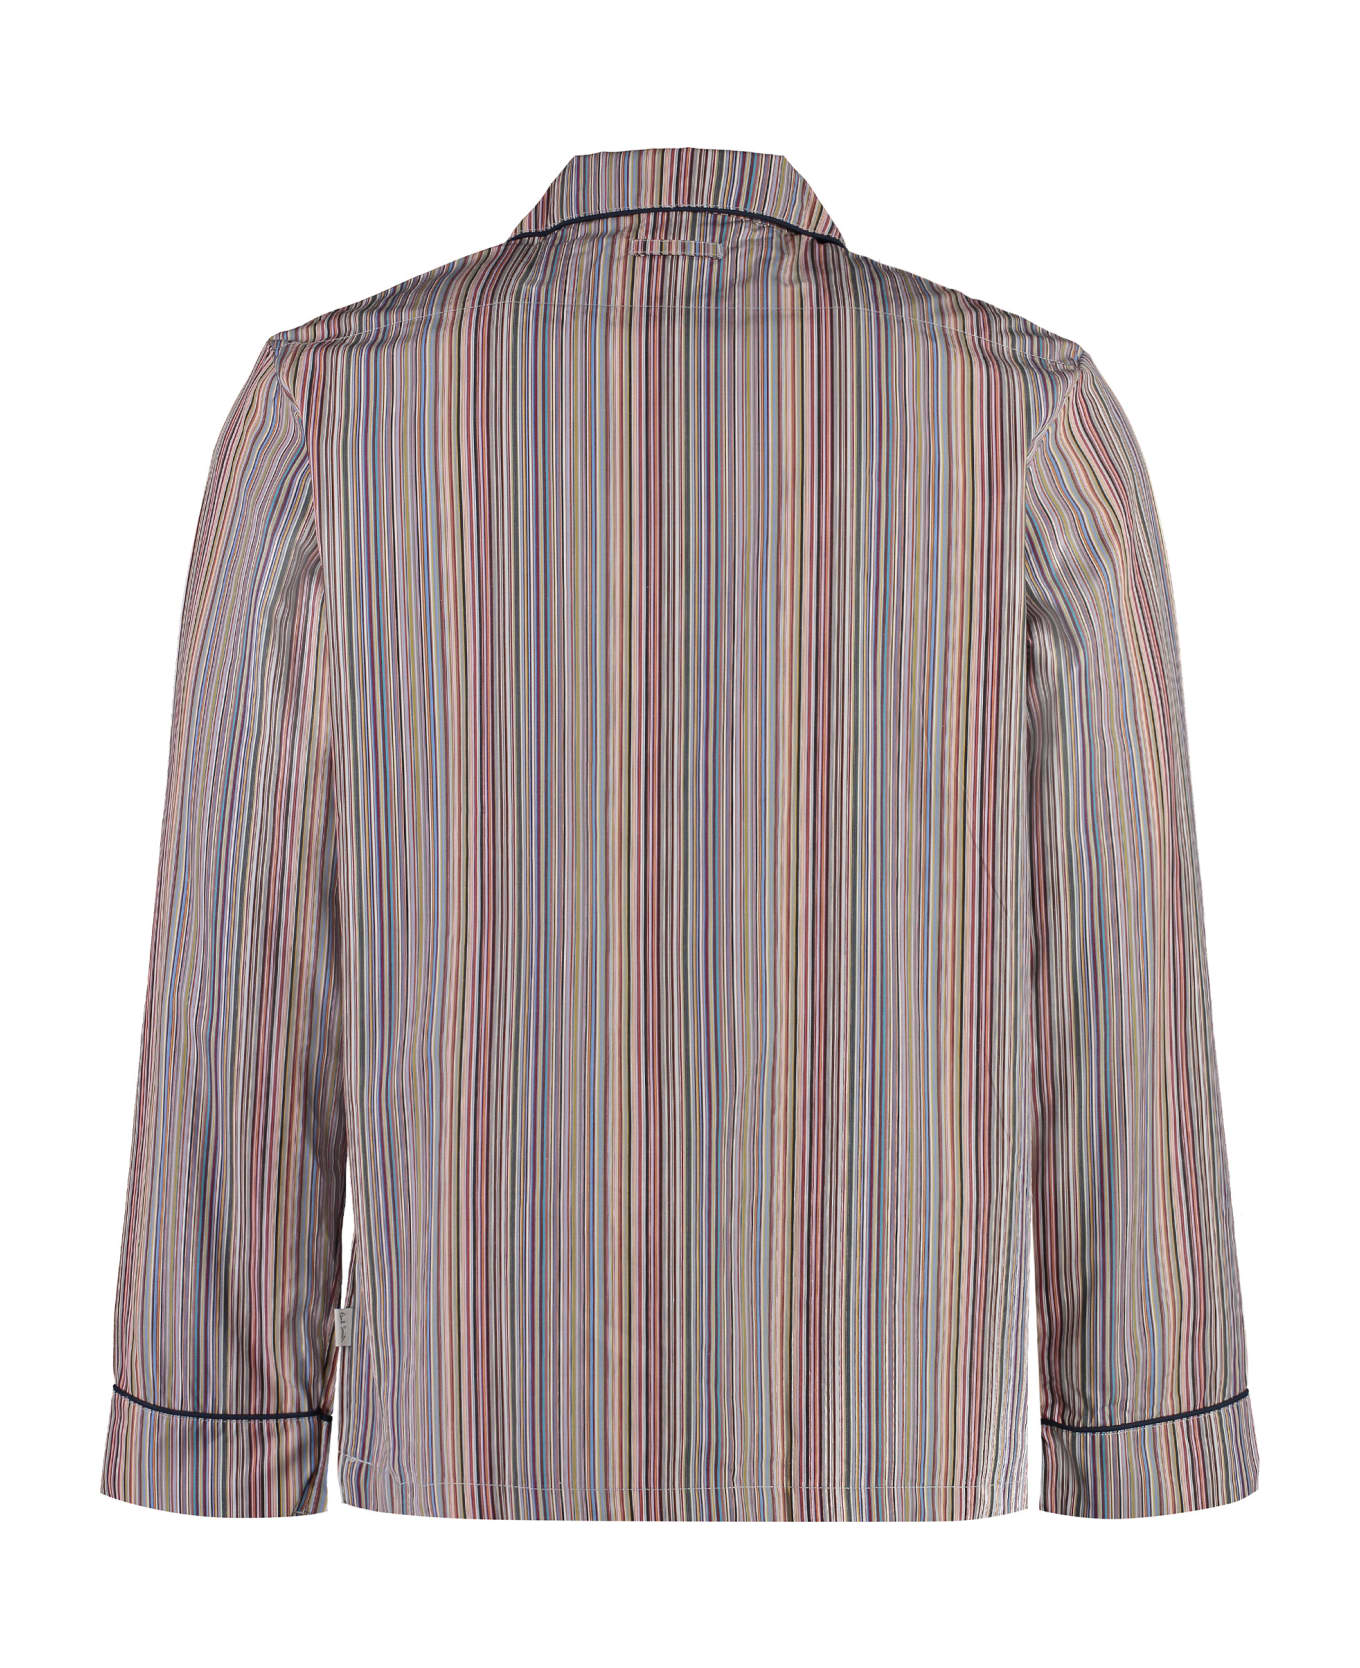 Paul Smith Striped Cotton Pyjamas - Multicolor